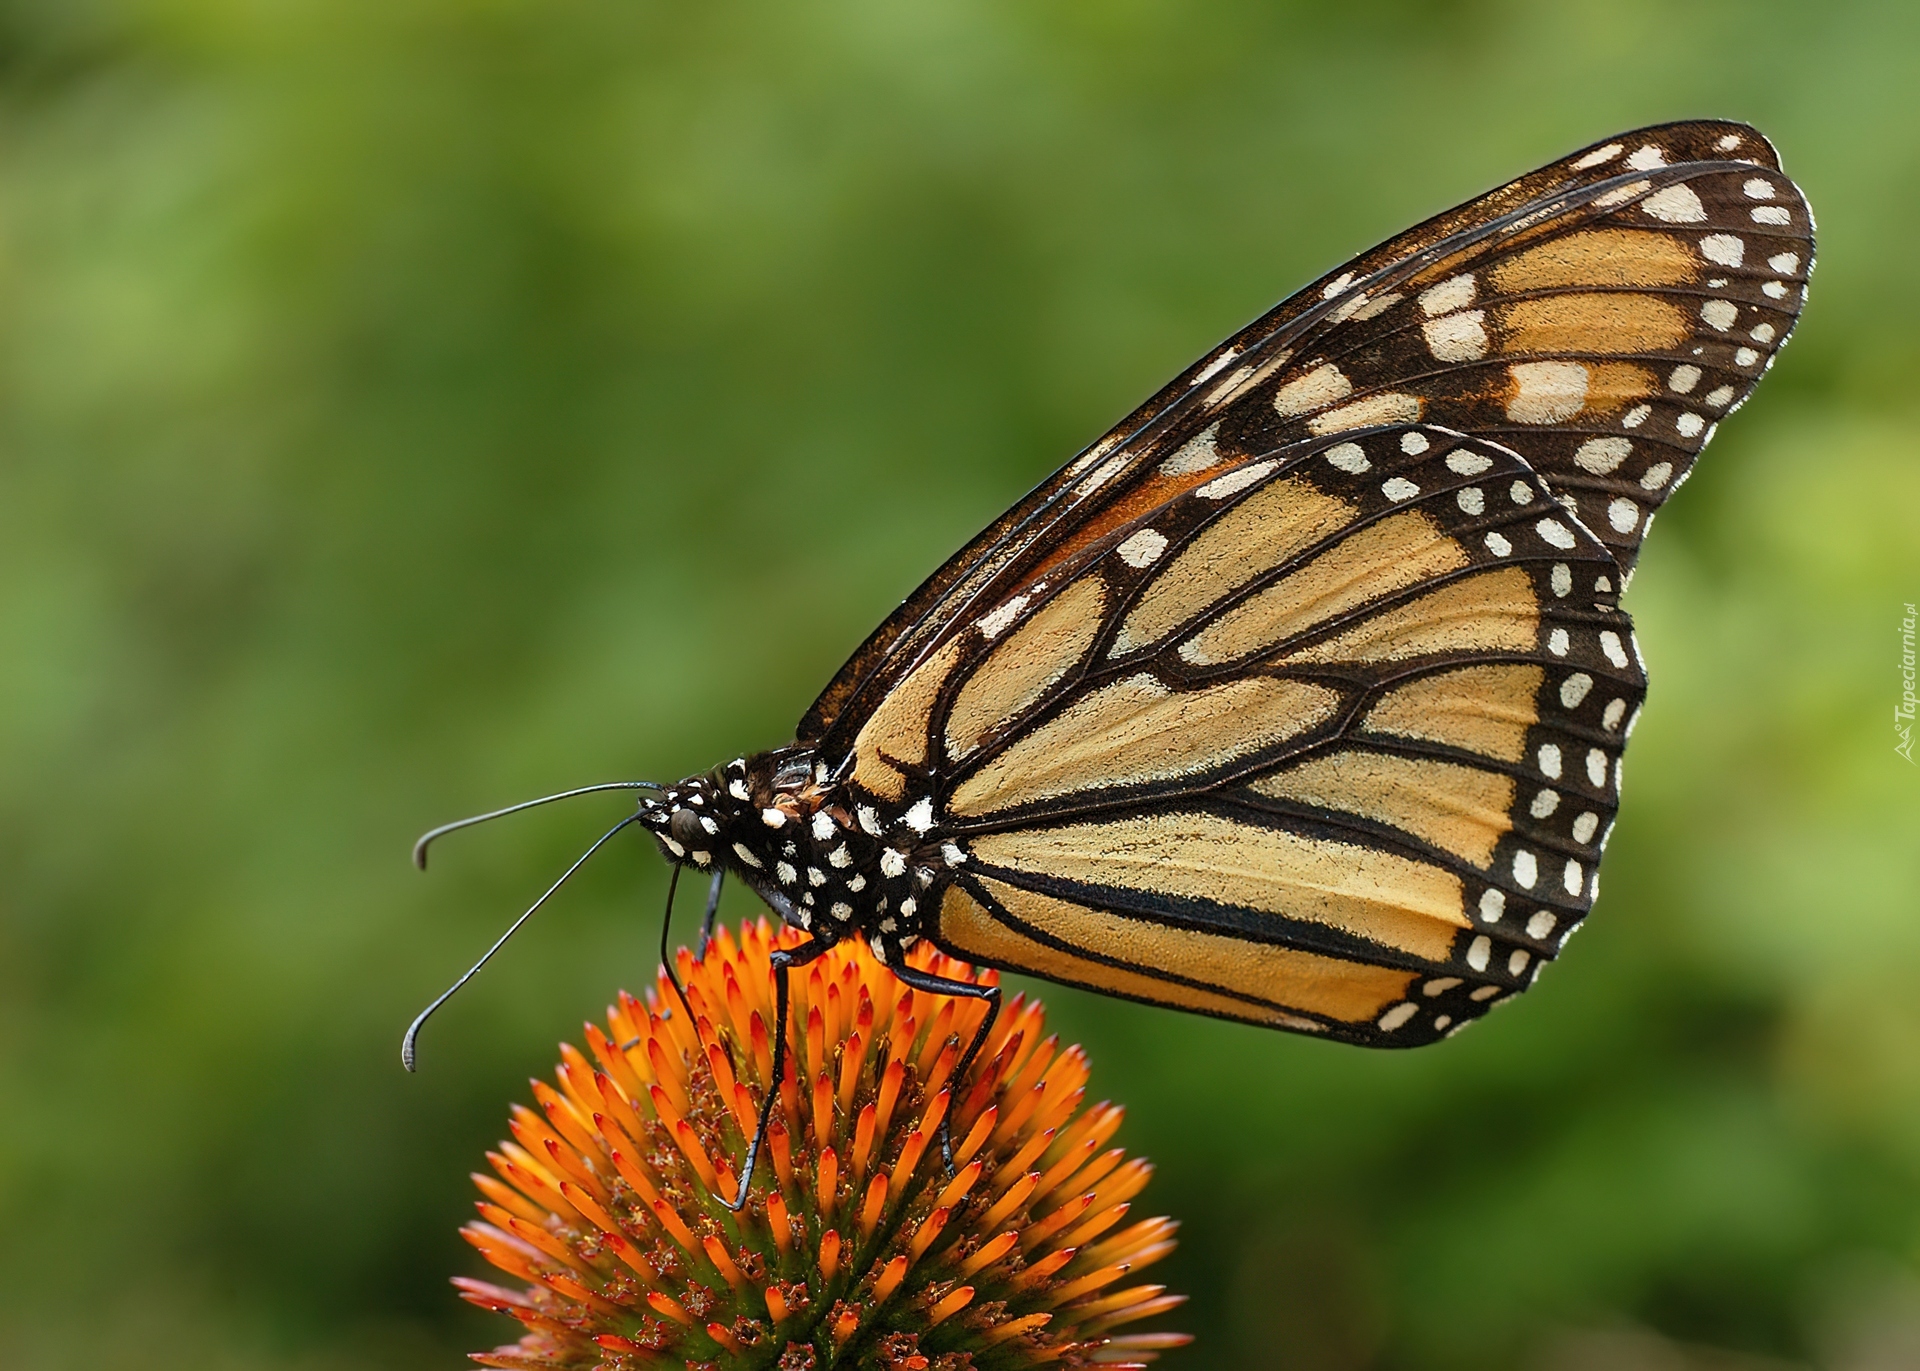 Motyl, Monarch Danaid, Kwiatek